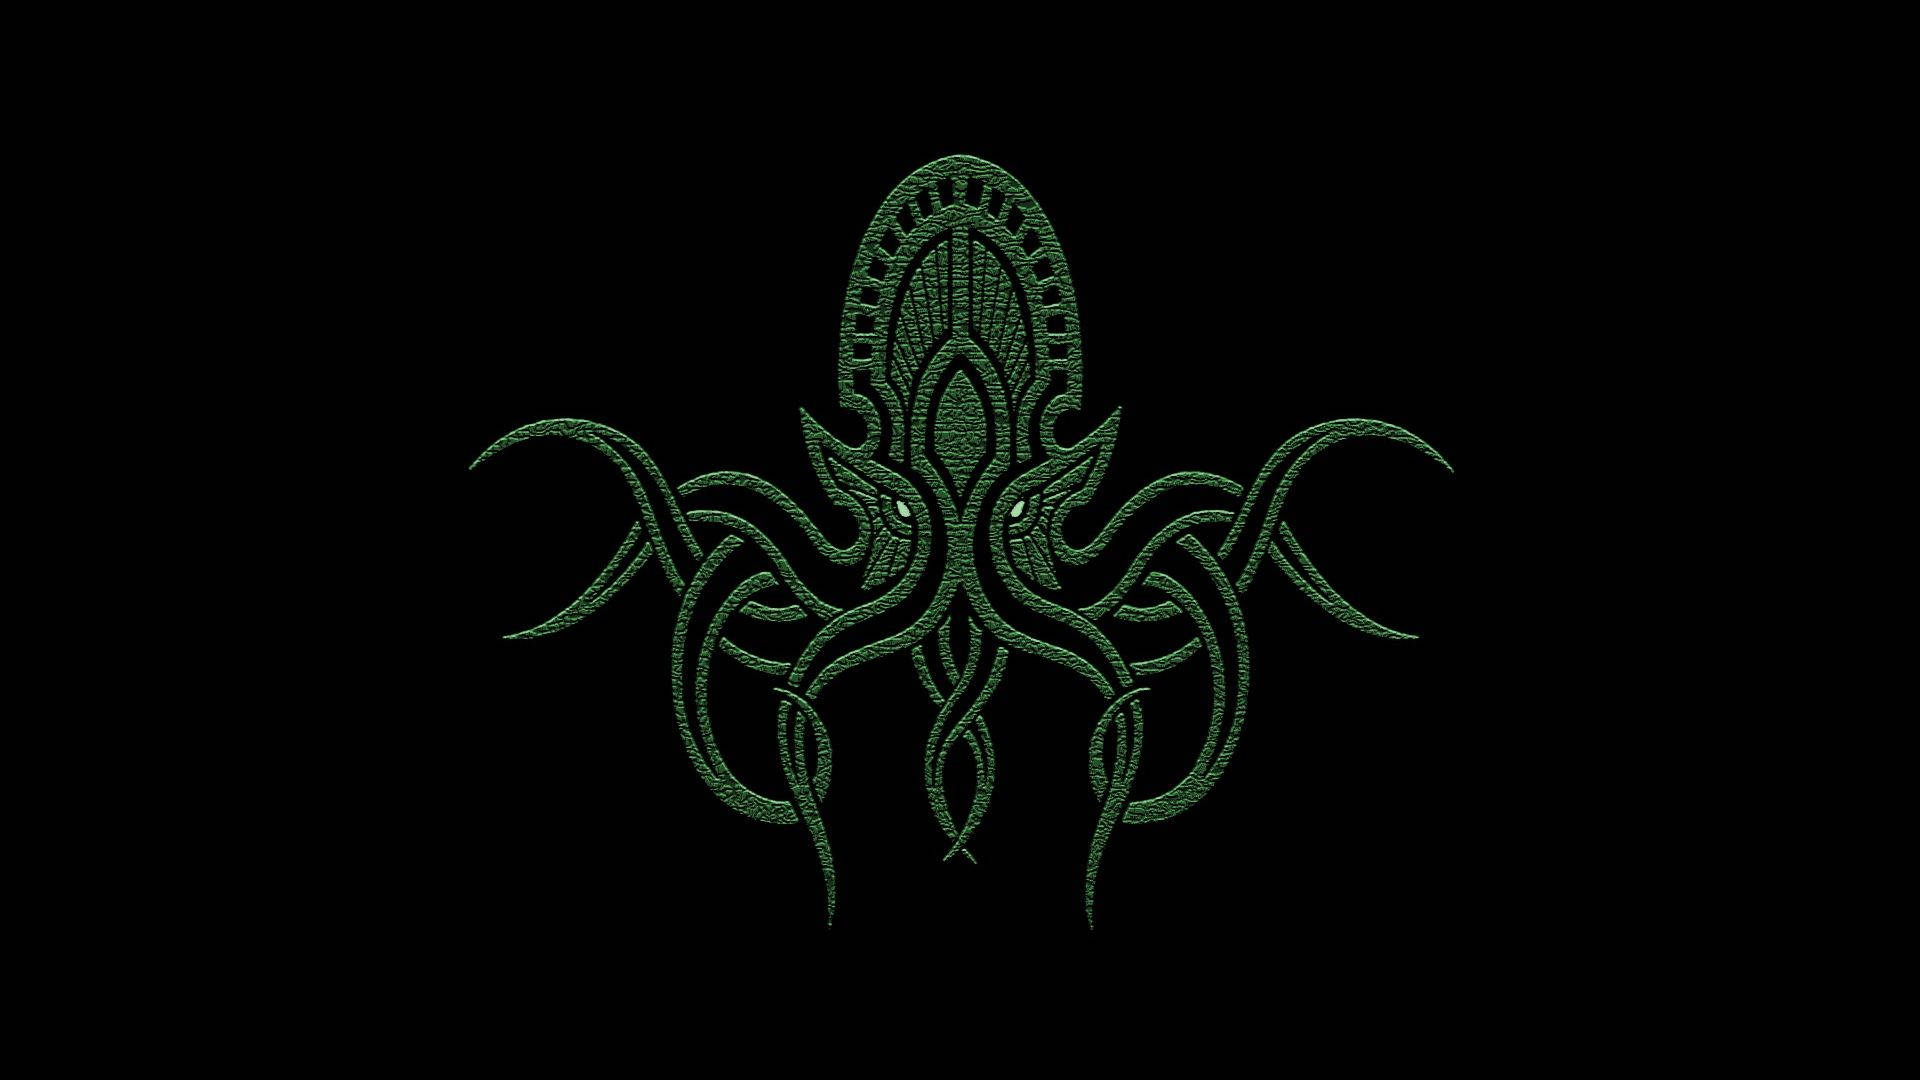 Cthulhu Minimalist Octopus Symbol Background